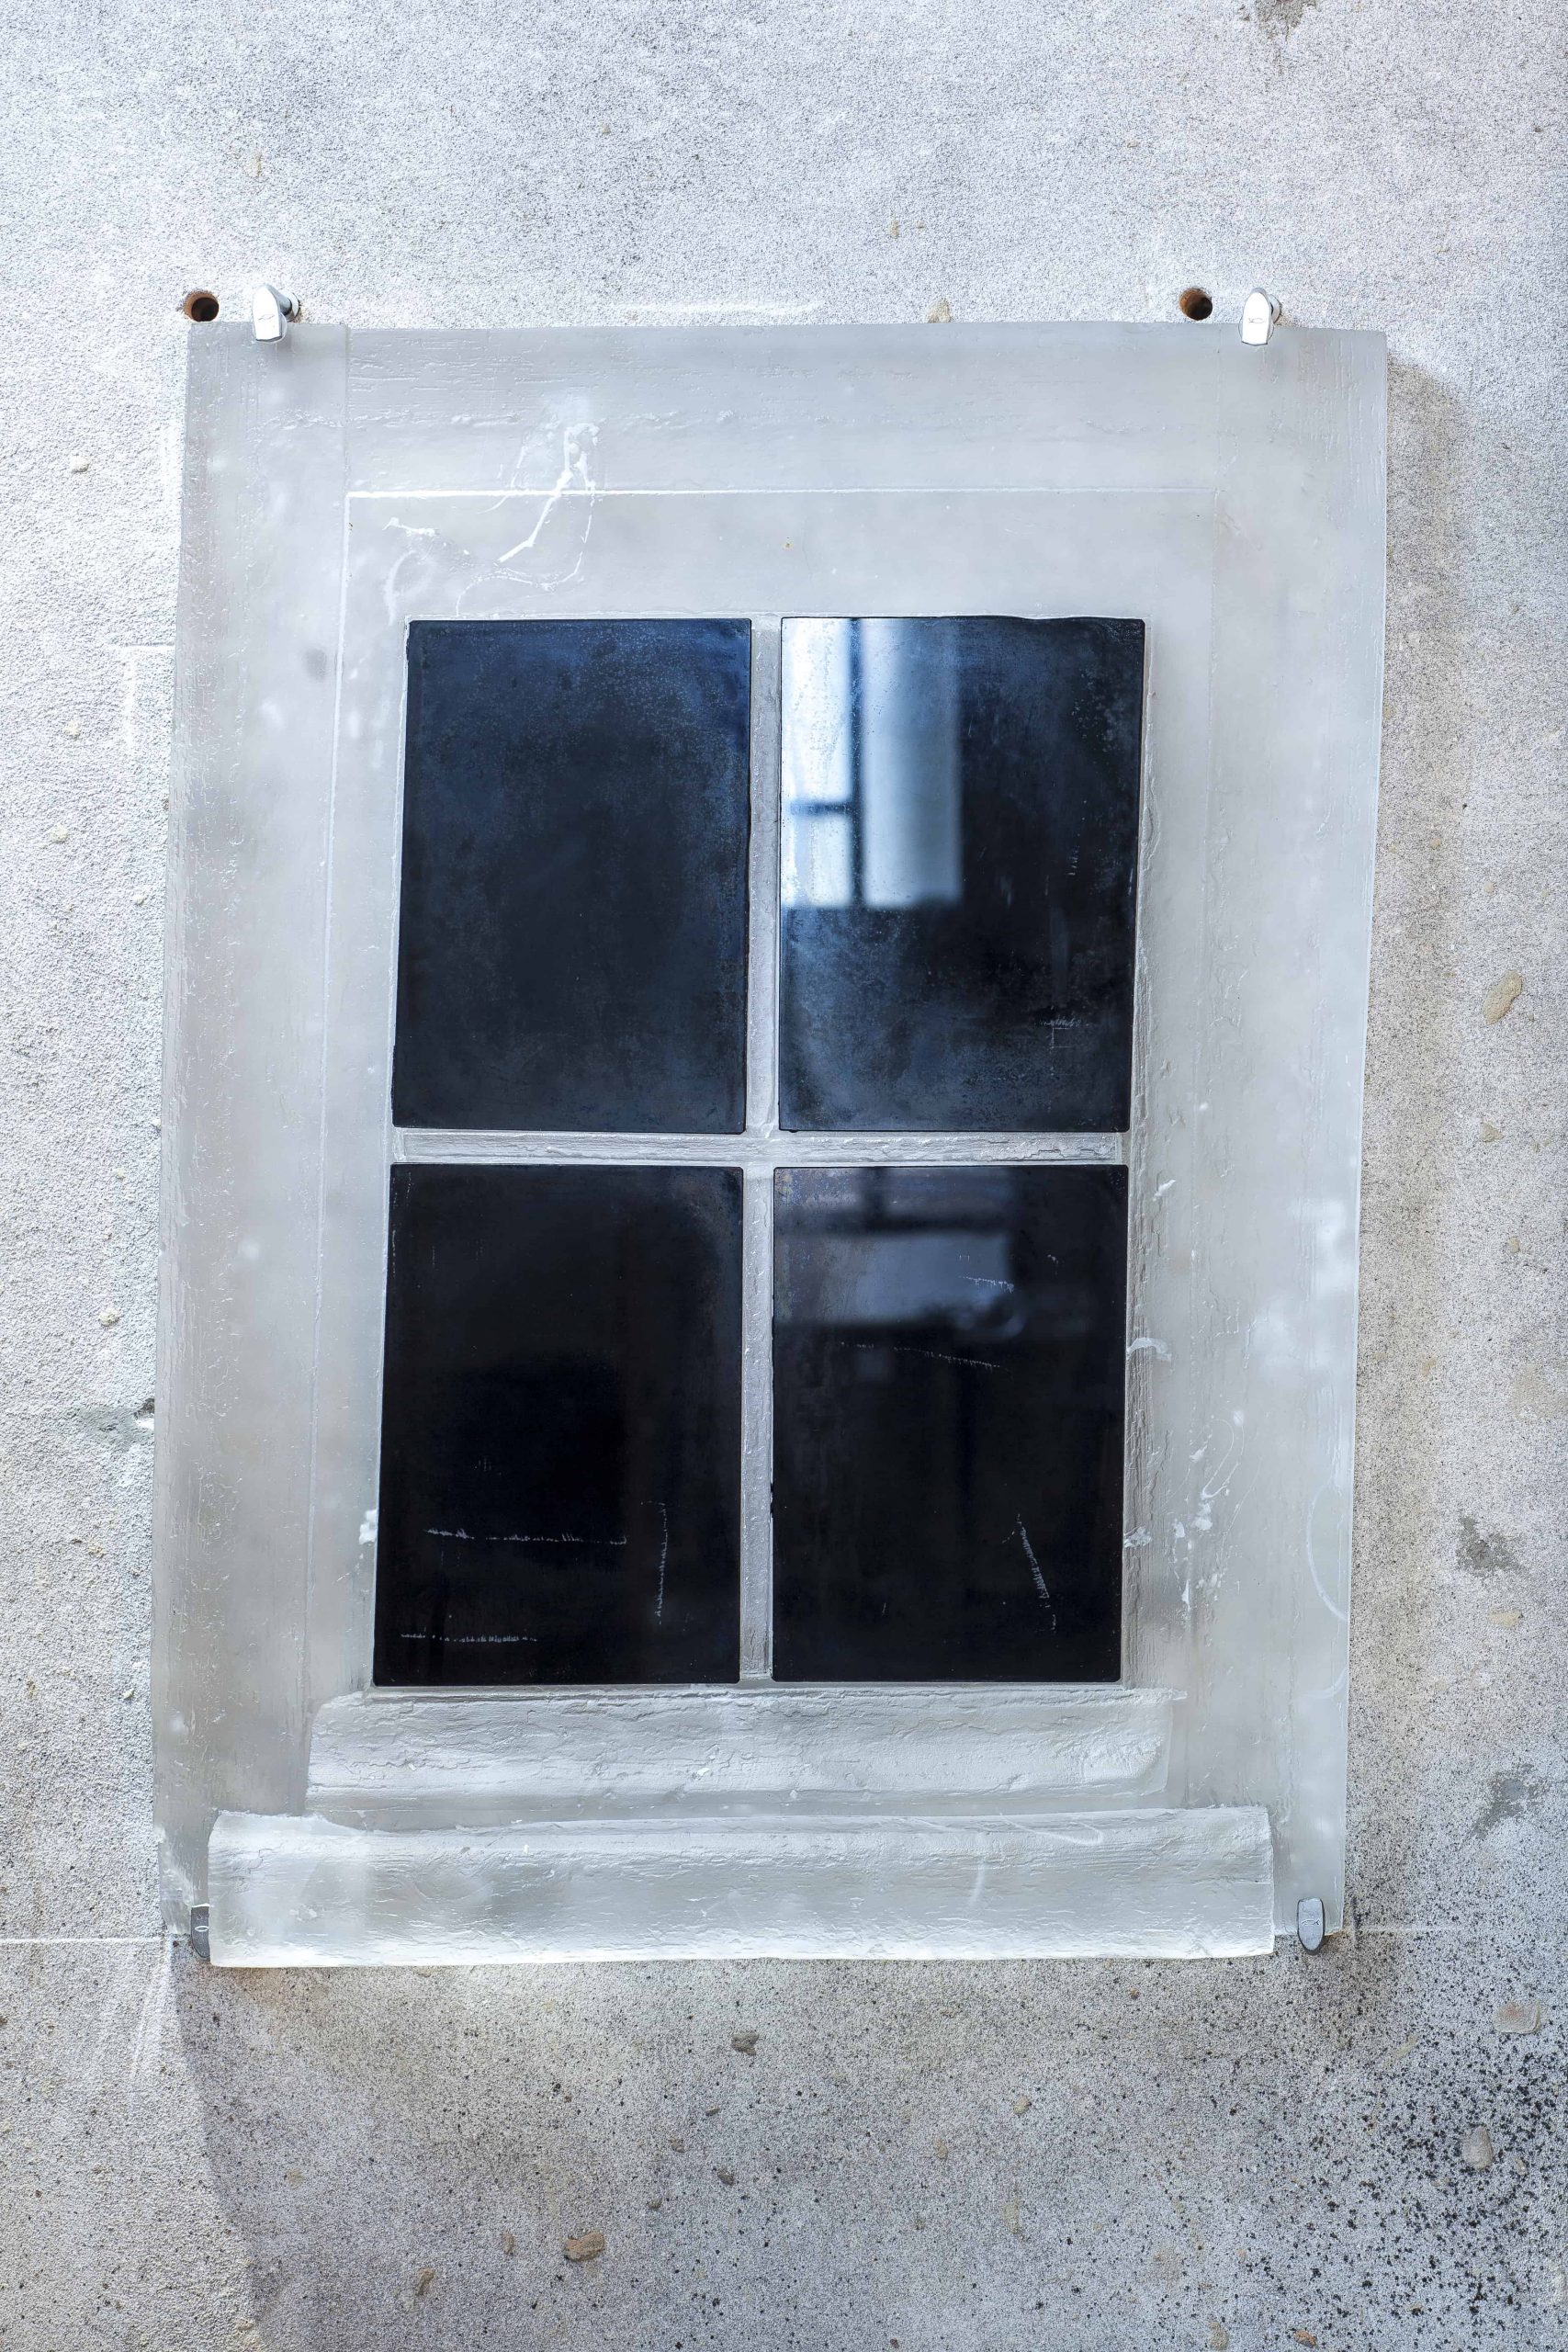 Cornelia Parker's Black Window